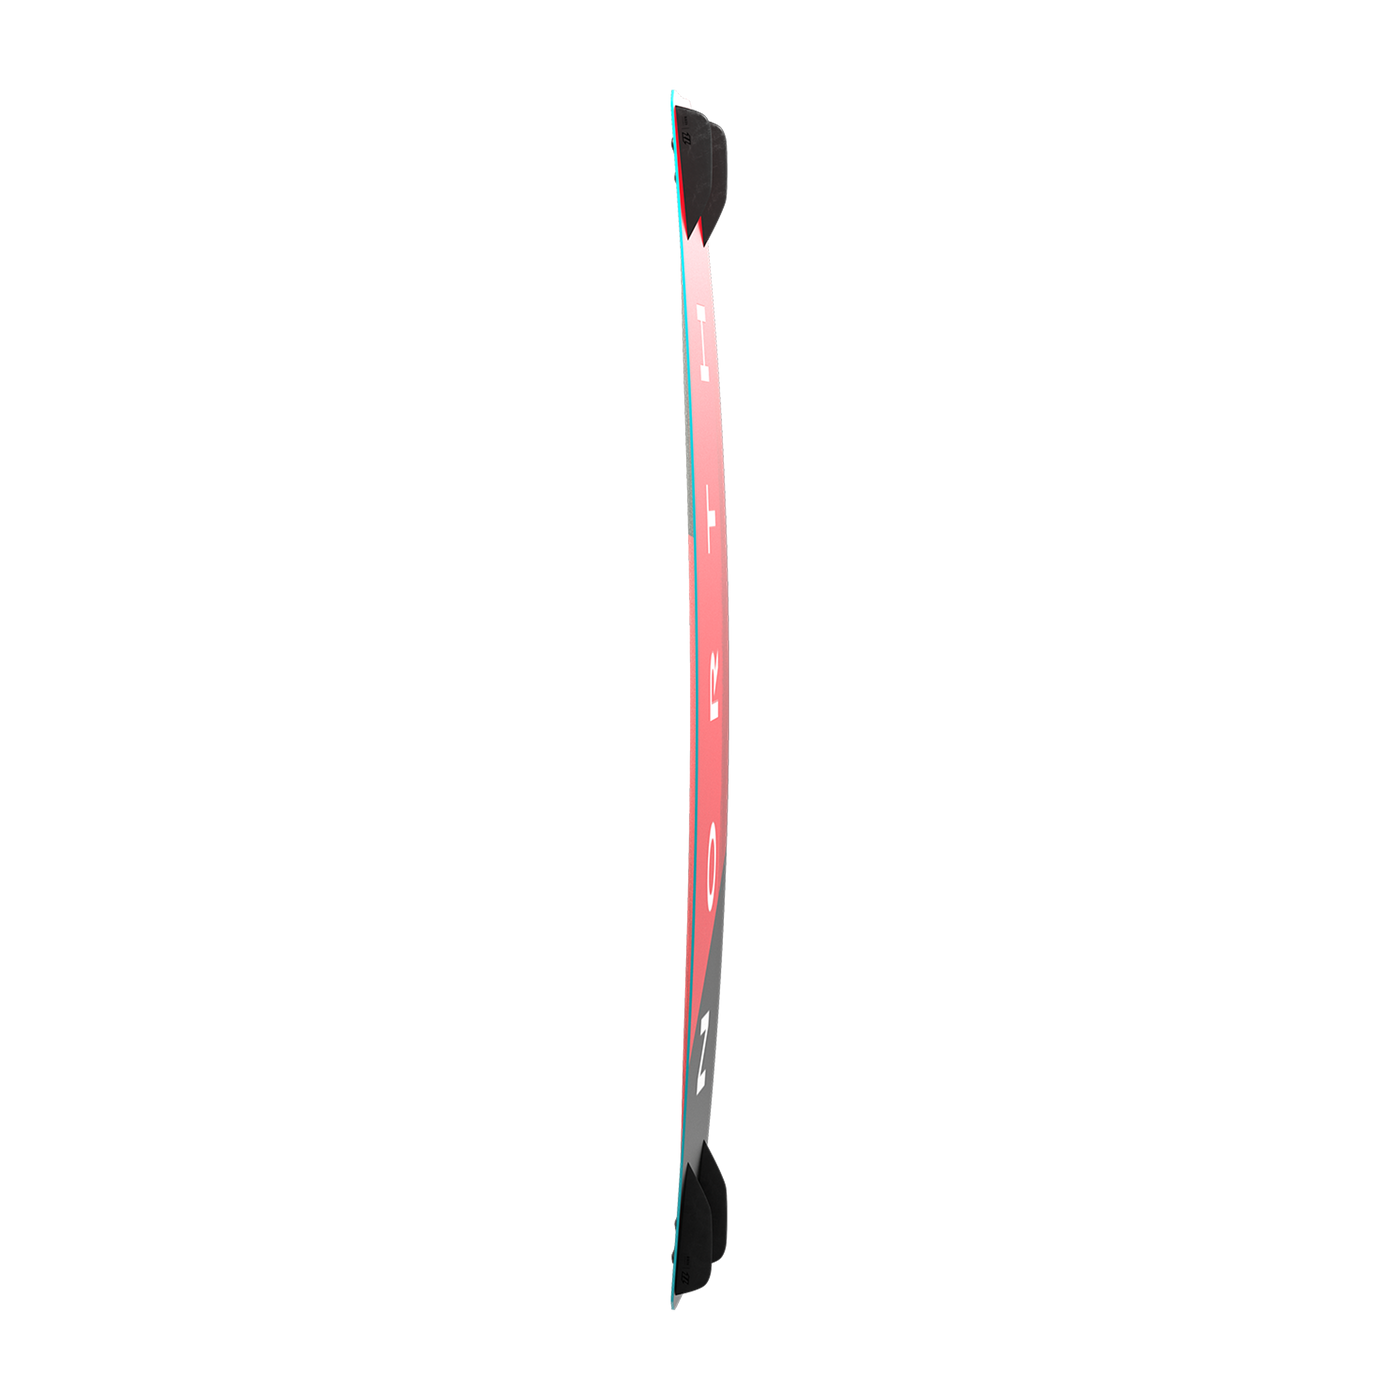 North Prime TT 2022 Board (Red Sea) 138 x 41cm-27% off